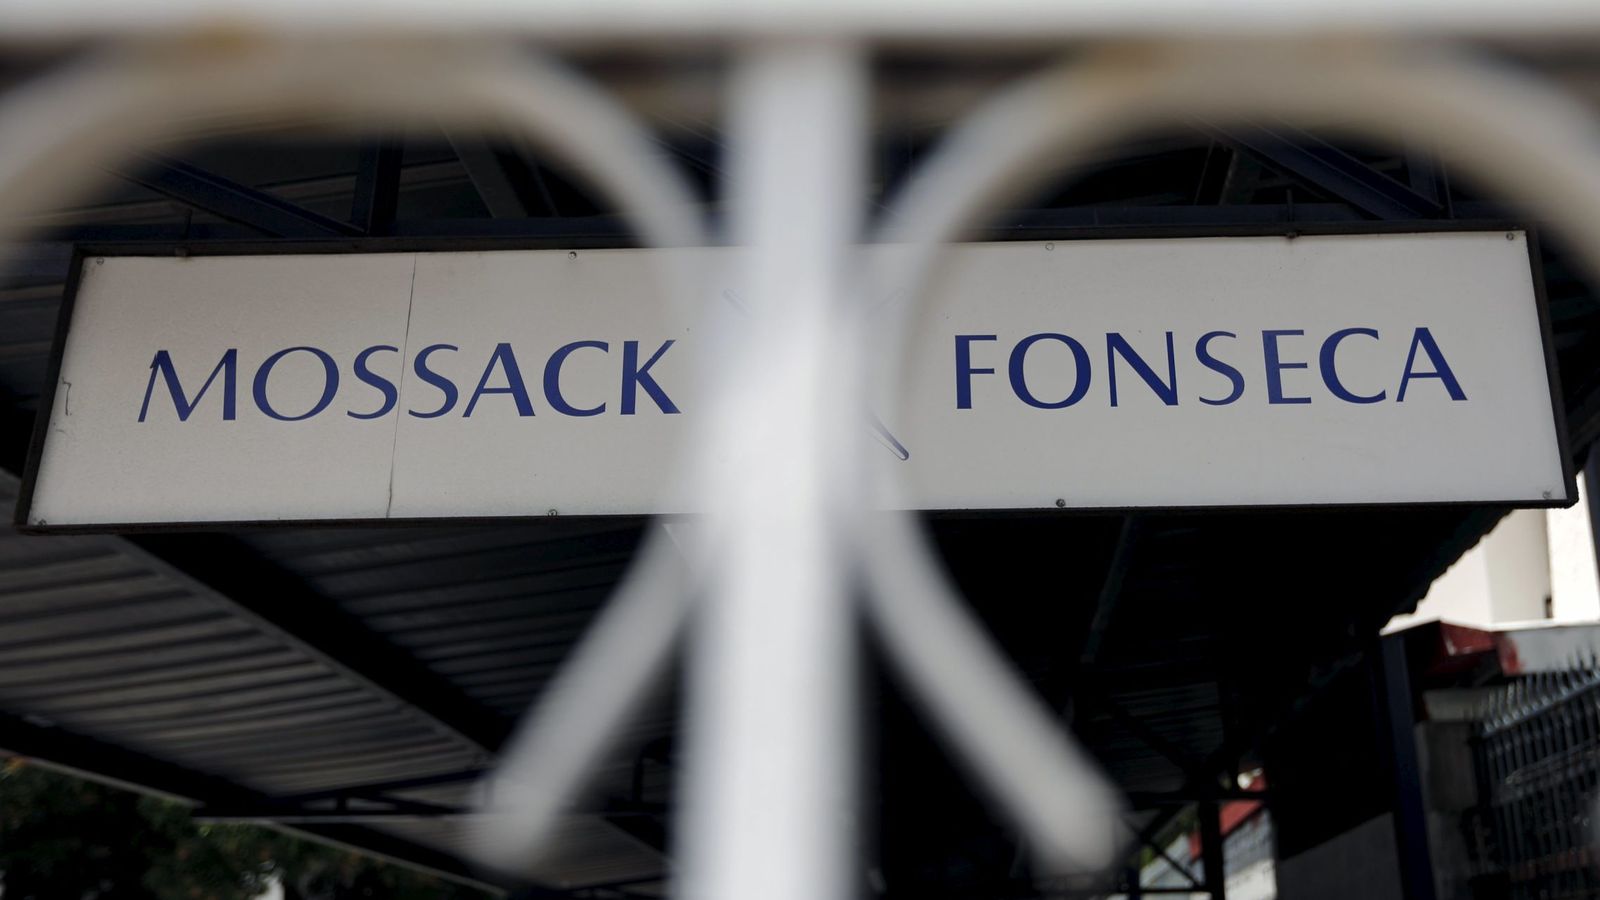 Foto: La firma de abogados Mossack Fonseca. (Reuters)